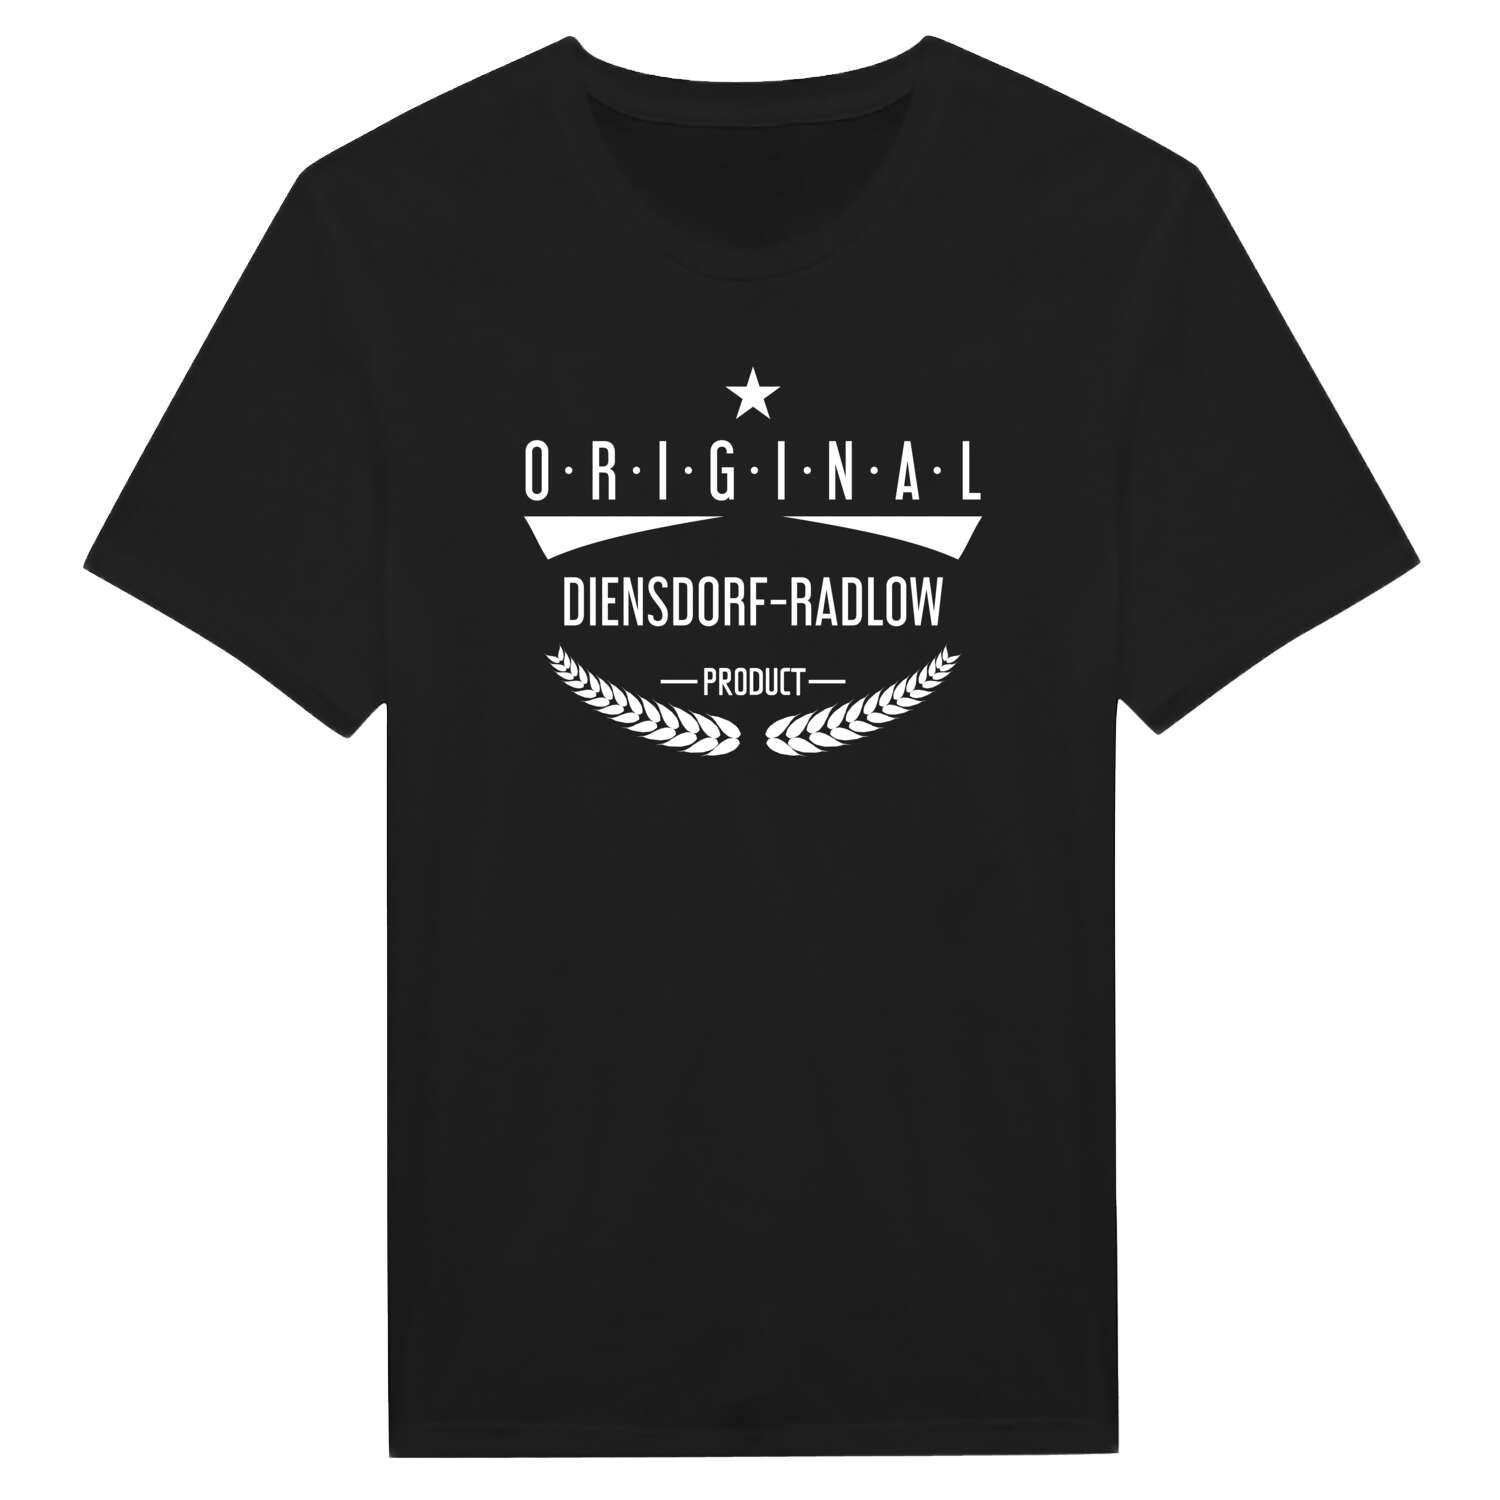 Diensdorf-Radlow T-Shirt »Original Product«